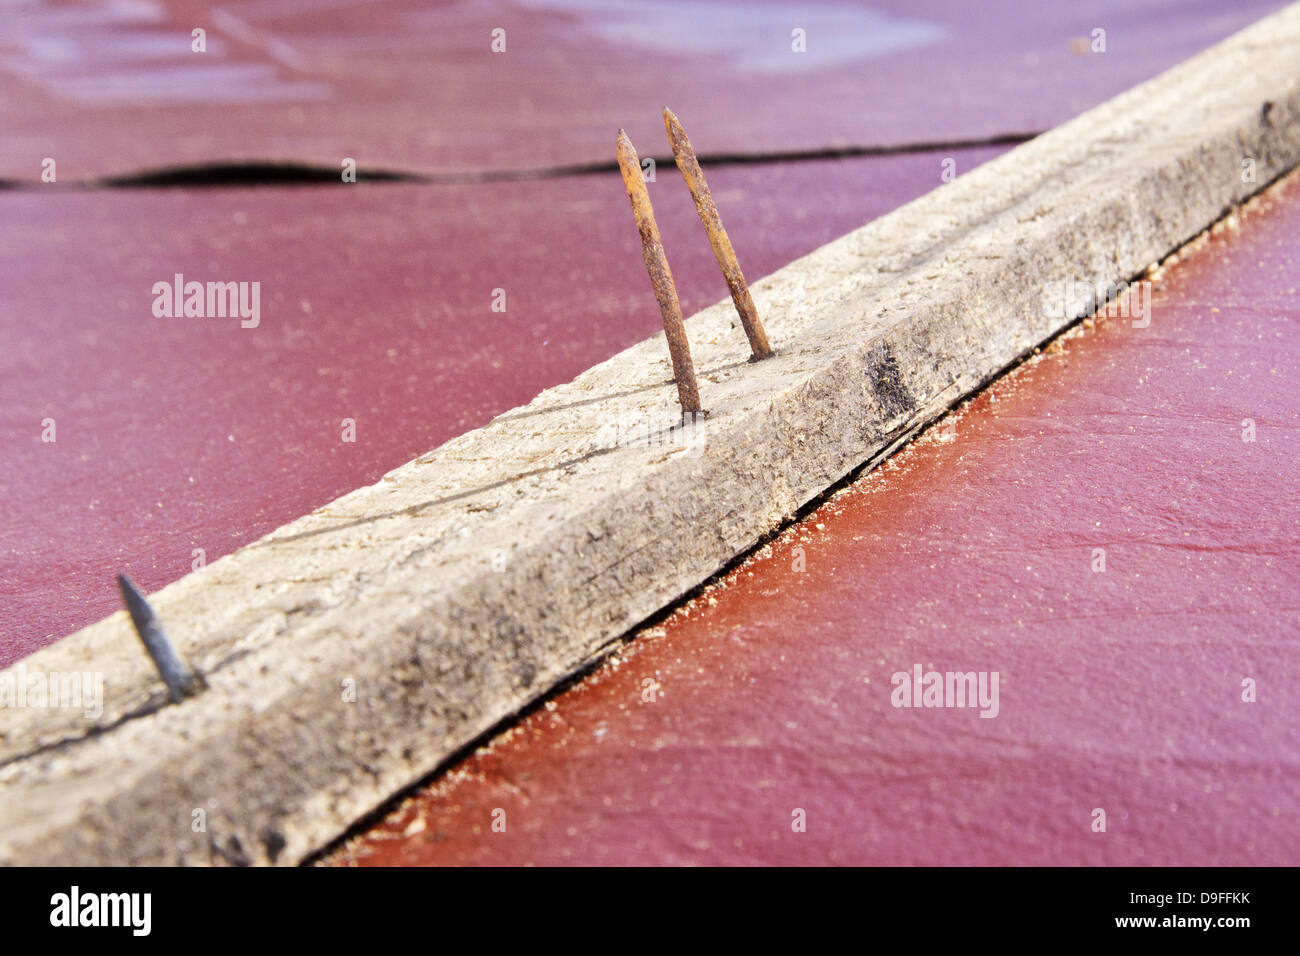 En einer Holzlatte Rostige Naegel |clavos oxidados en un travesaño de madera| Foto de stock